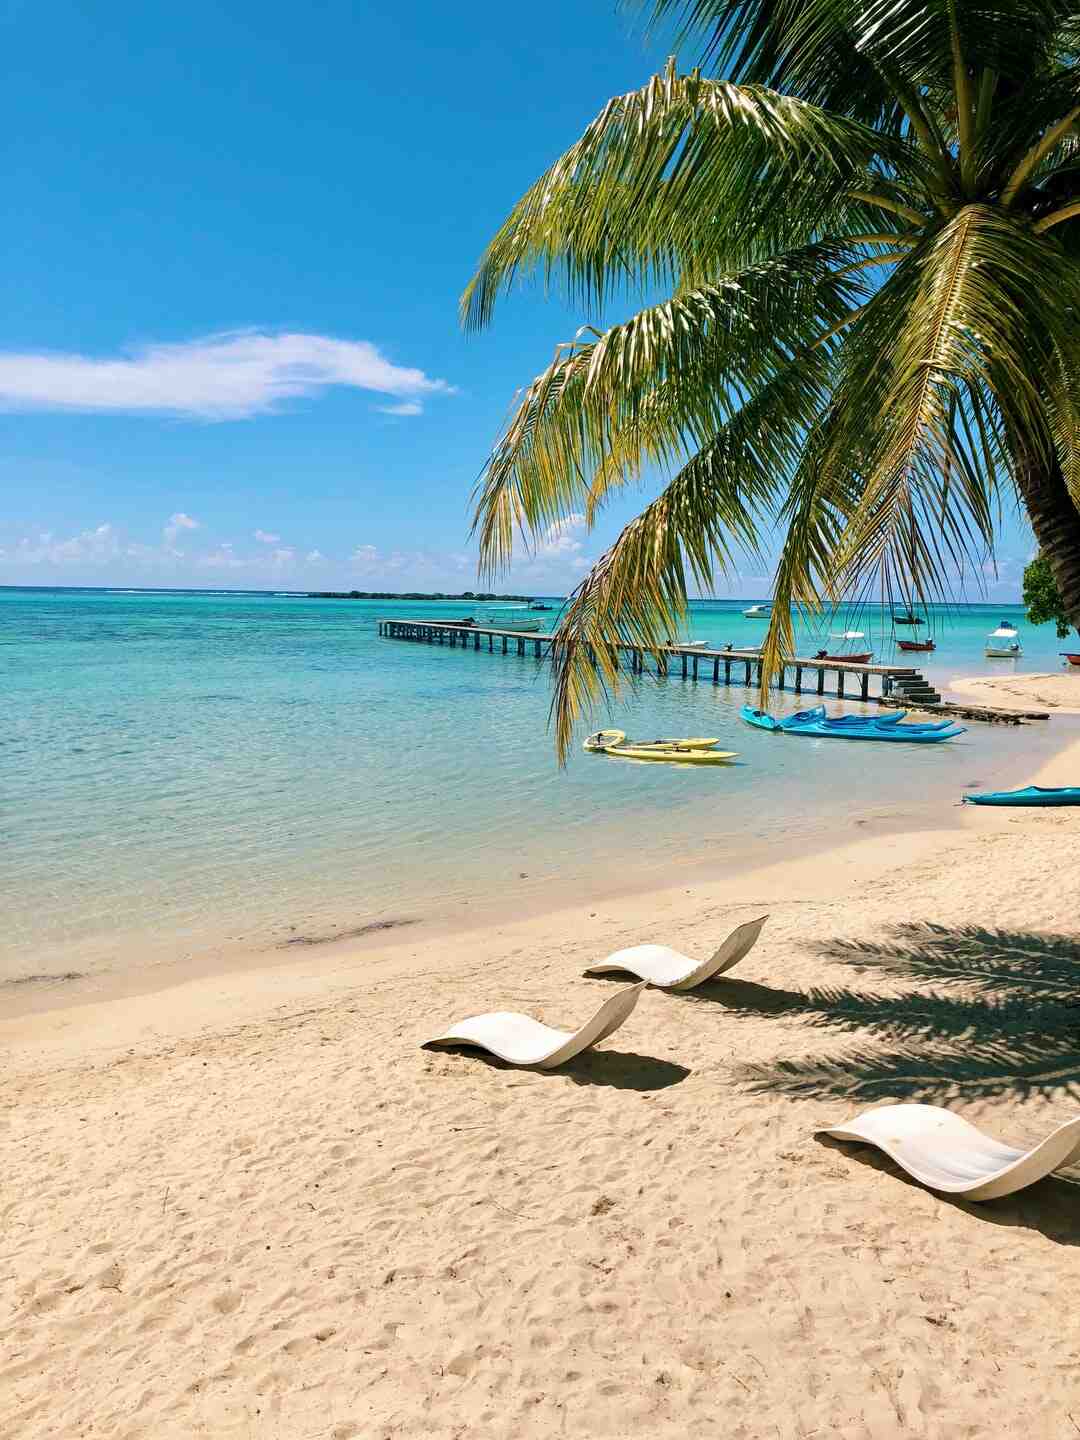 Când să mergi în Tahiti cel mai ieftin?